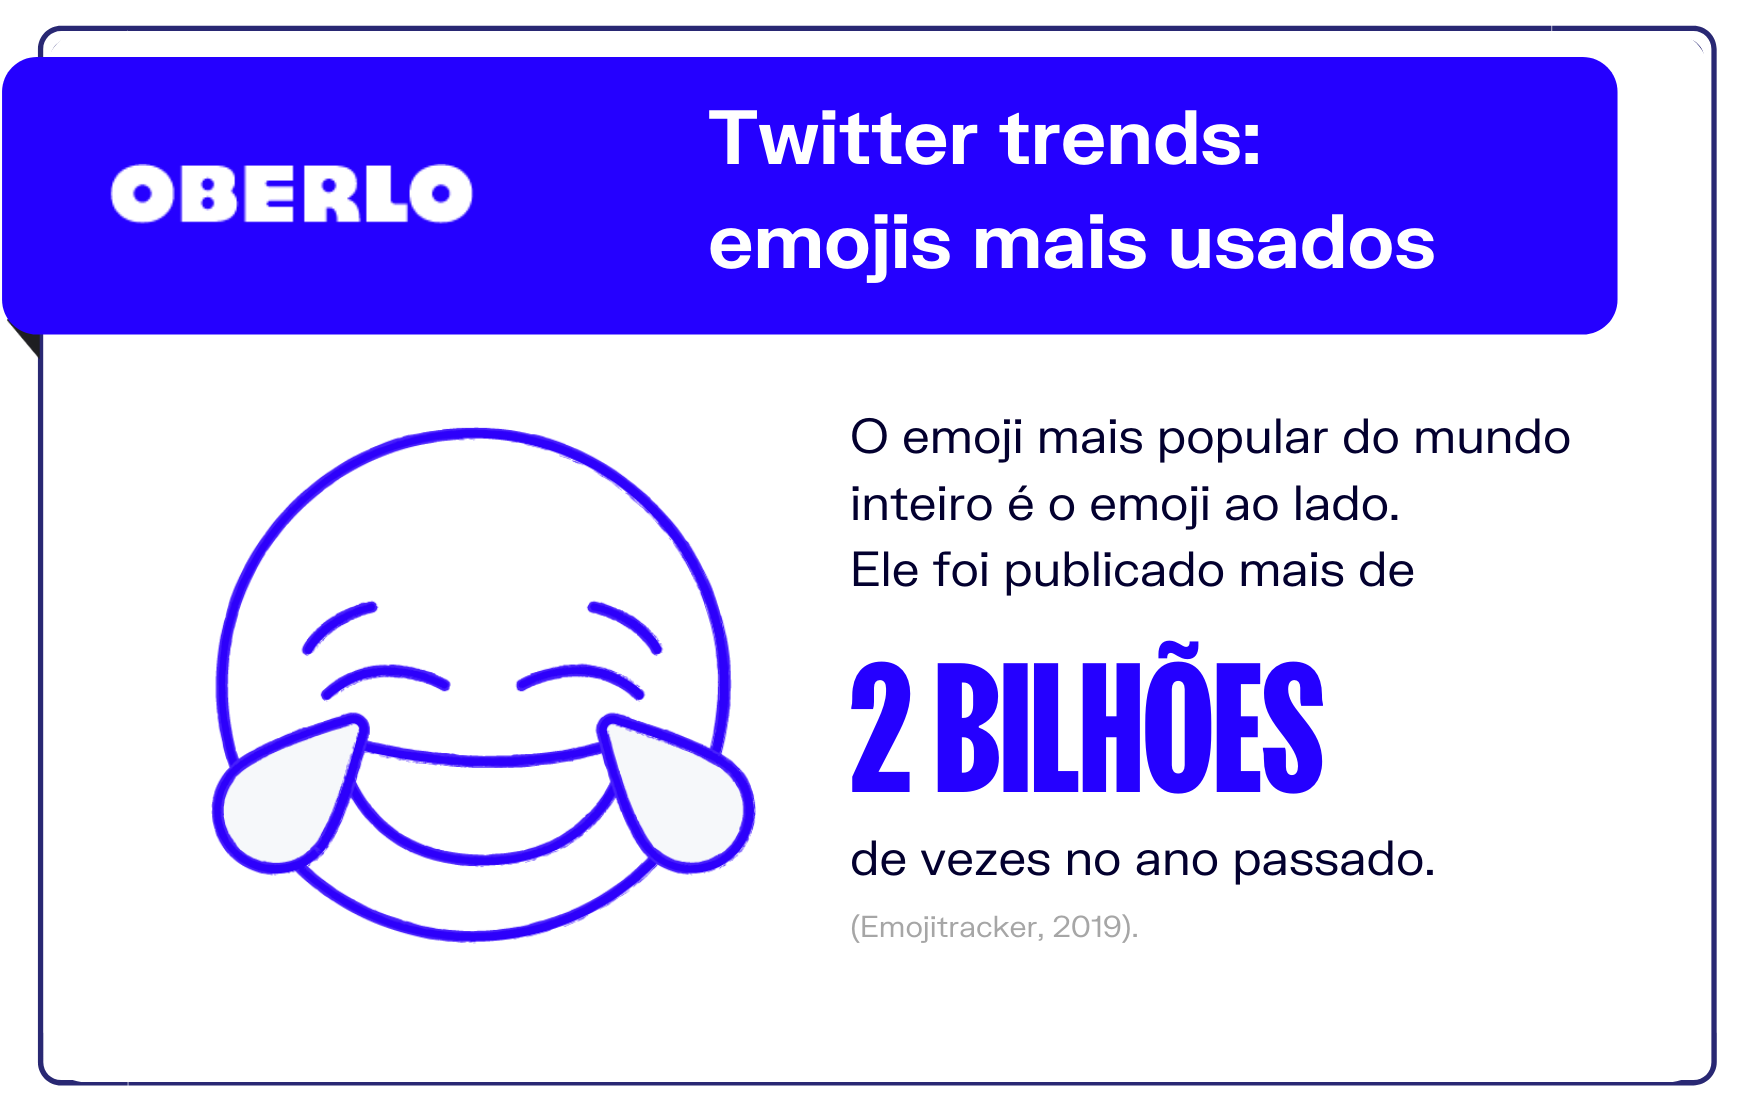 Twitter trends: emojis mais usados